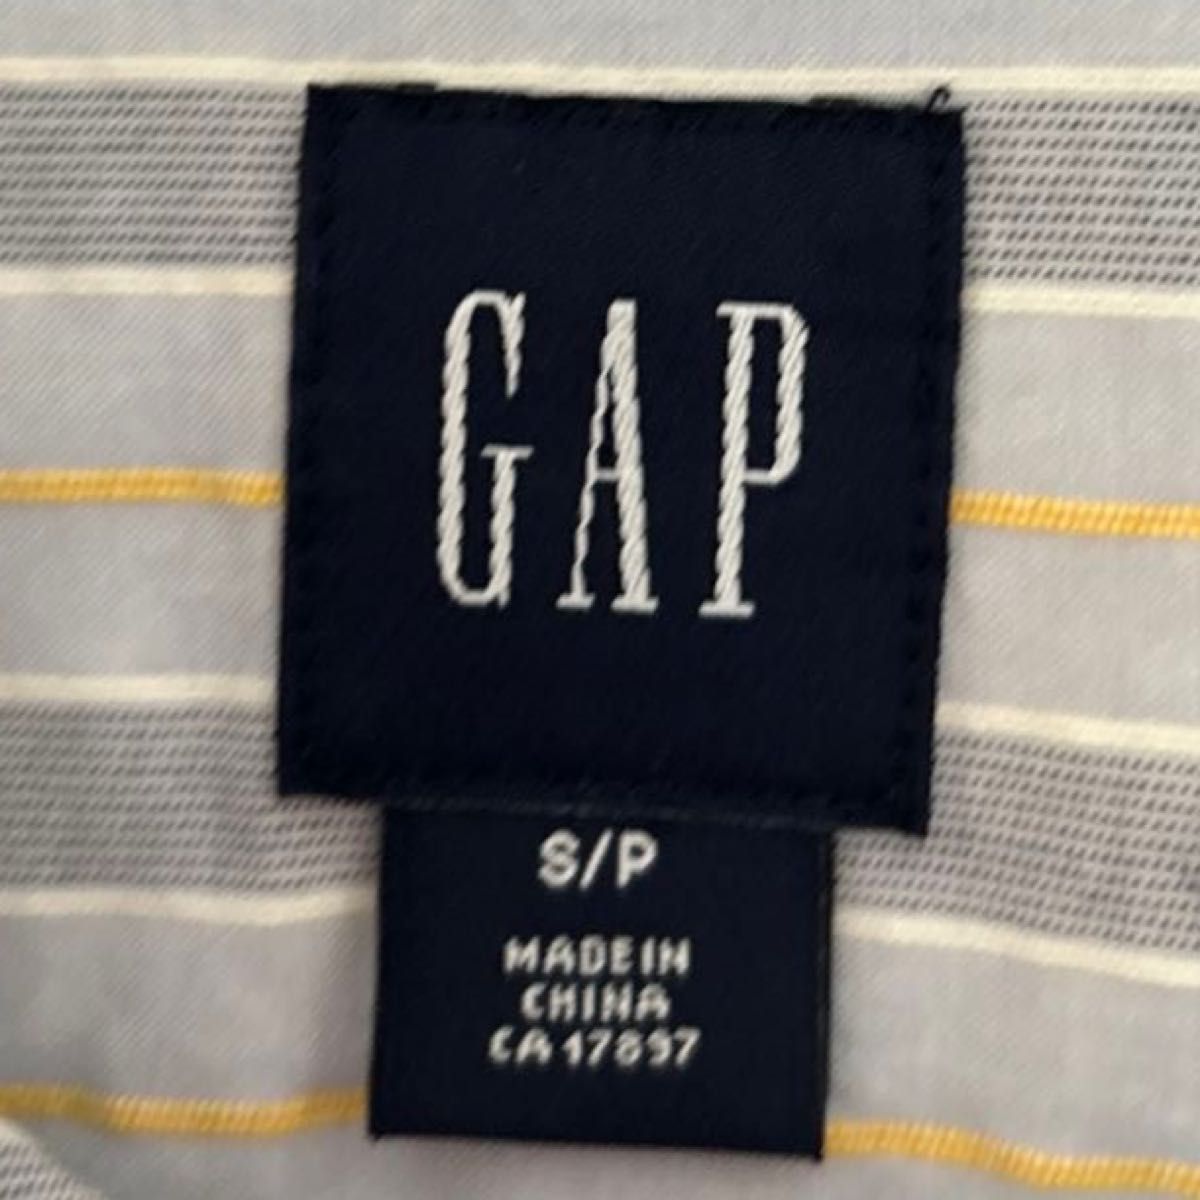 【GAP】(USED) メンズ ストライプ プルオーバー 長袖シャツ ボタンダウンシャツ Sサイズ